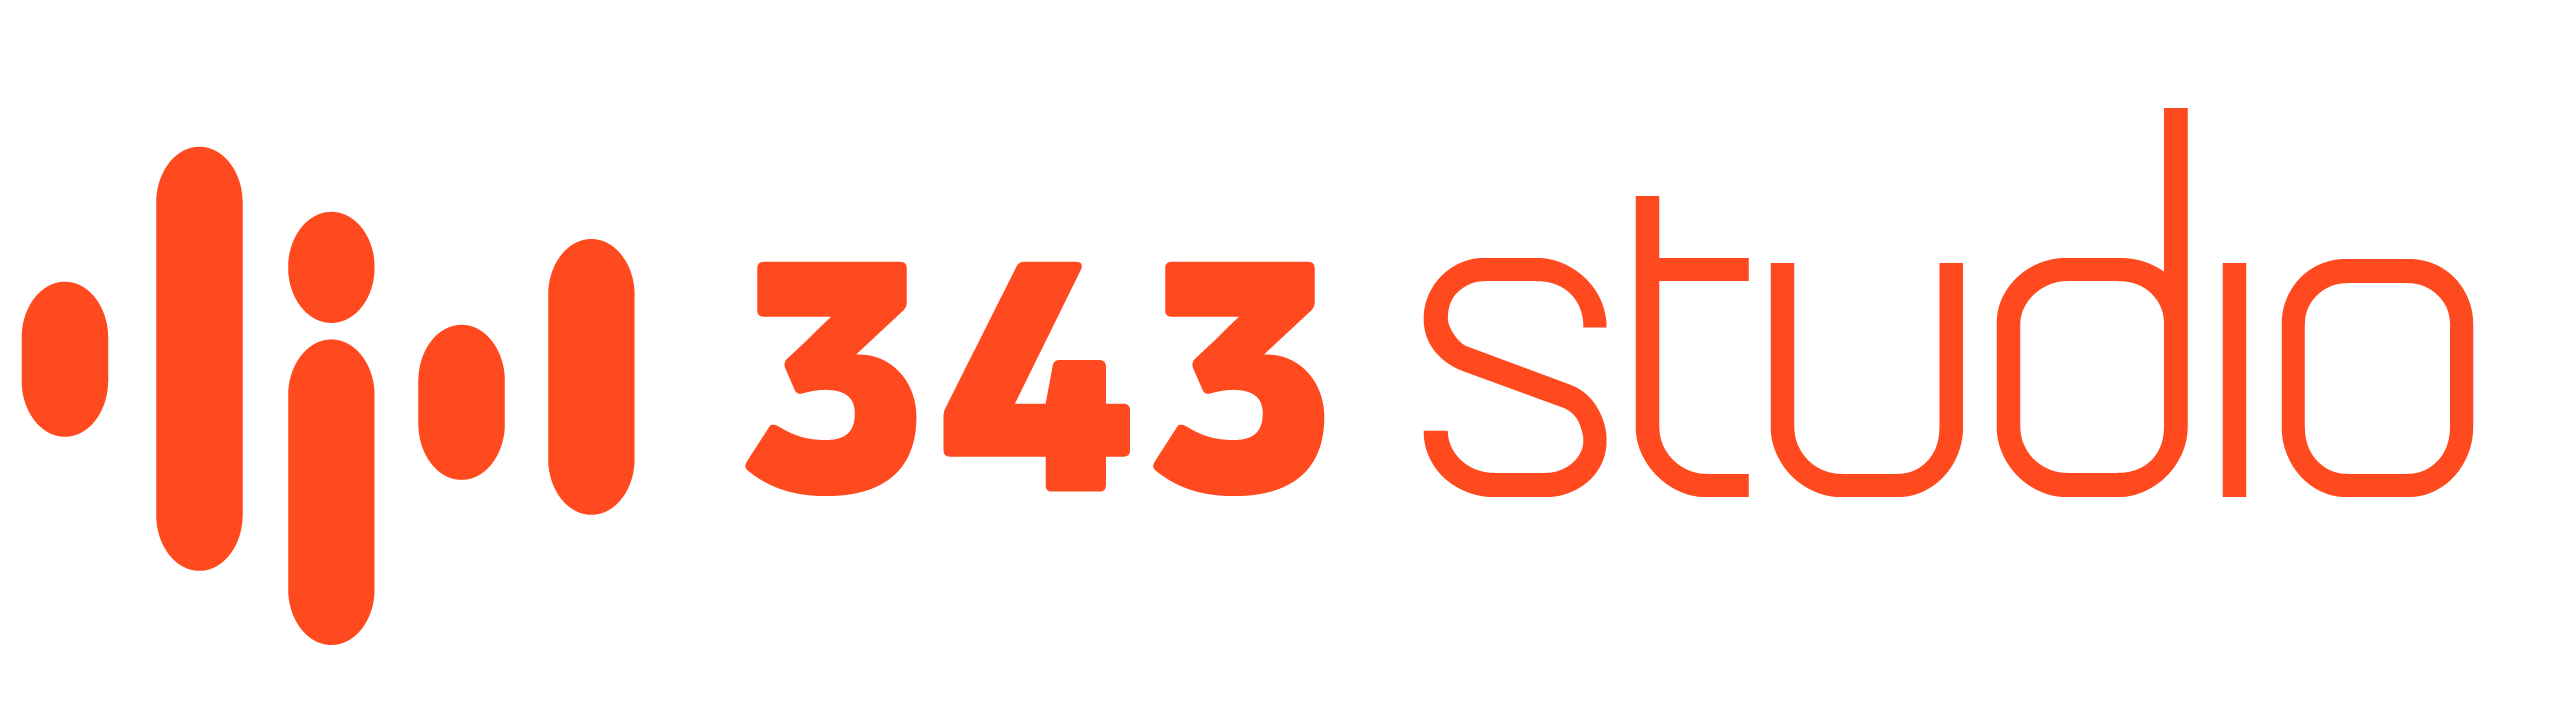 343 STUDIO